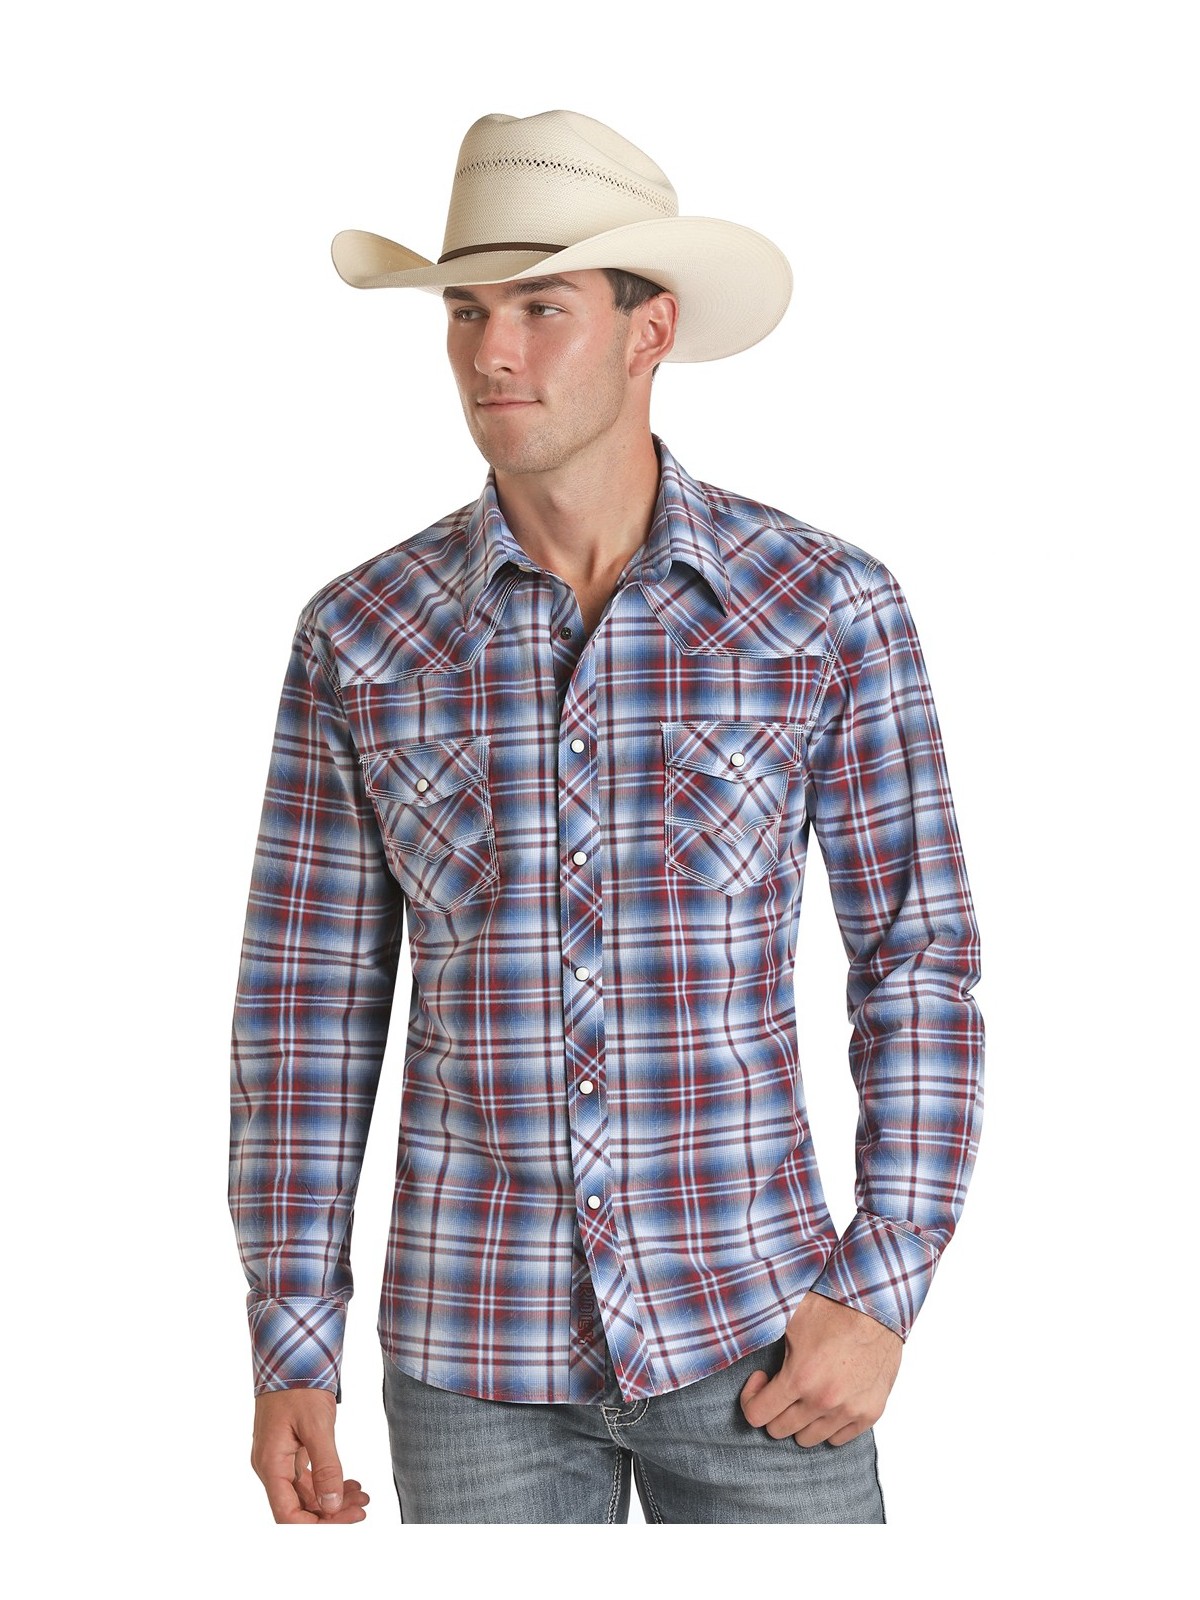 Rock'n'Roll Cowboy Western Shirt B2S5082